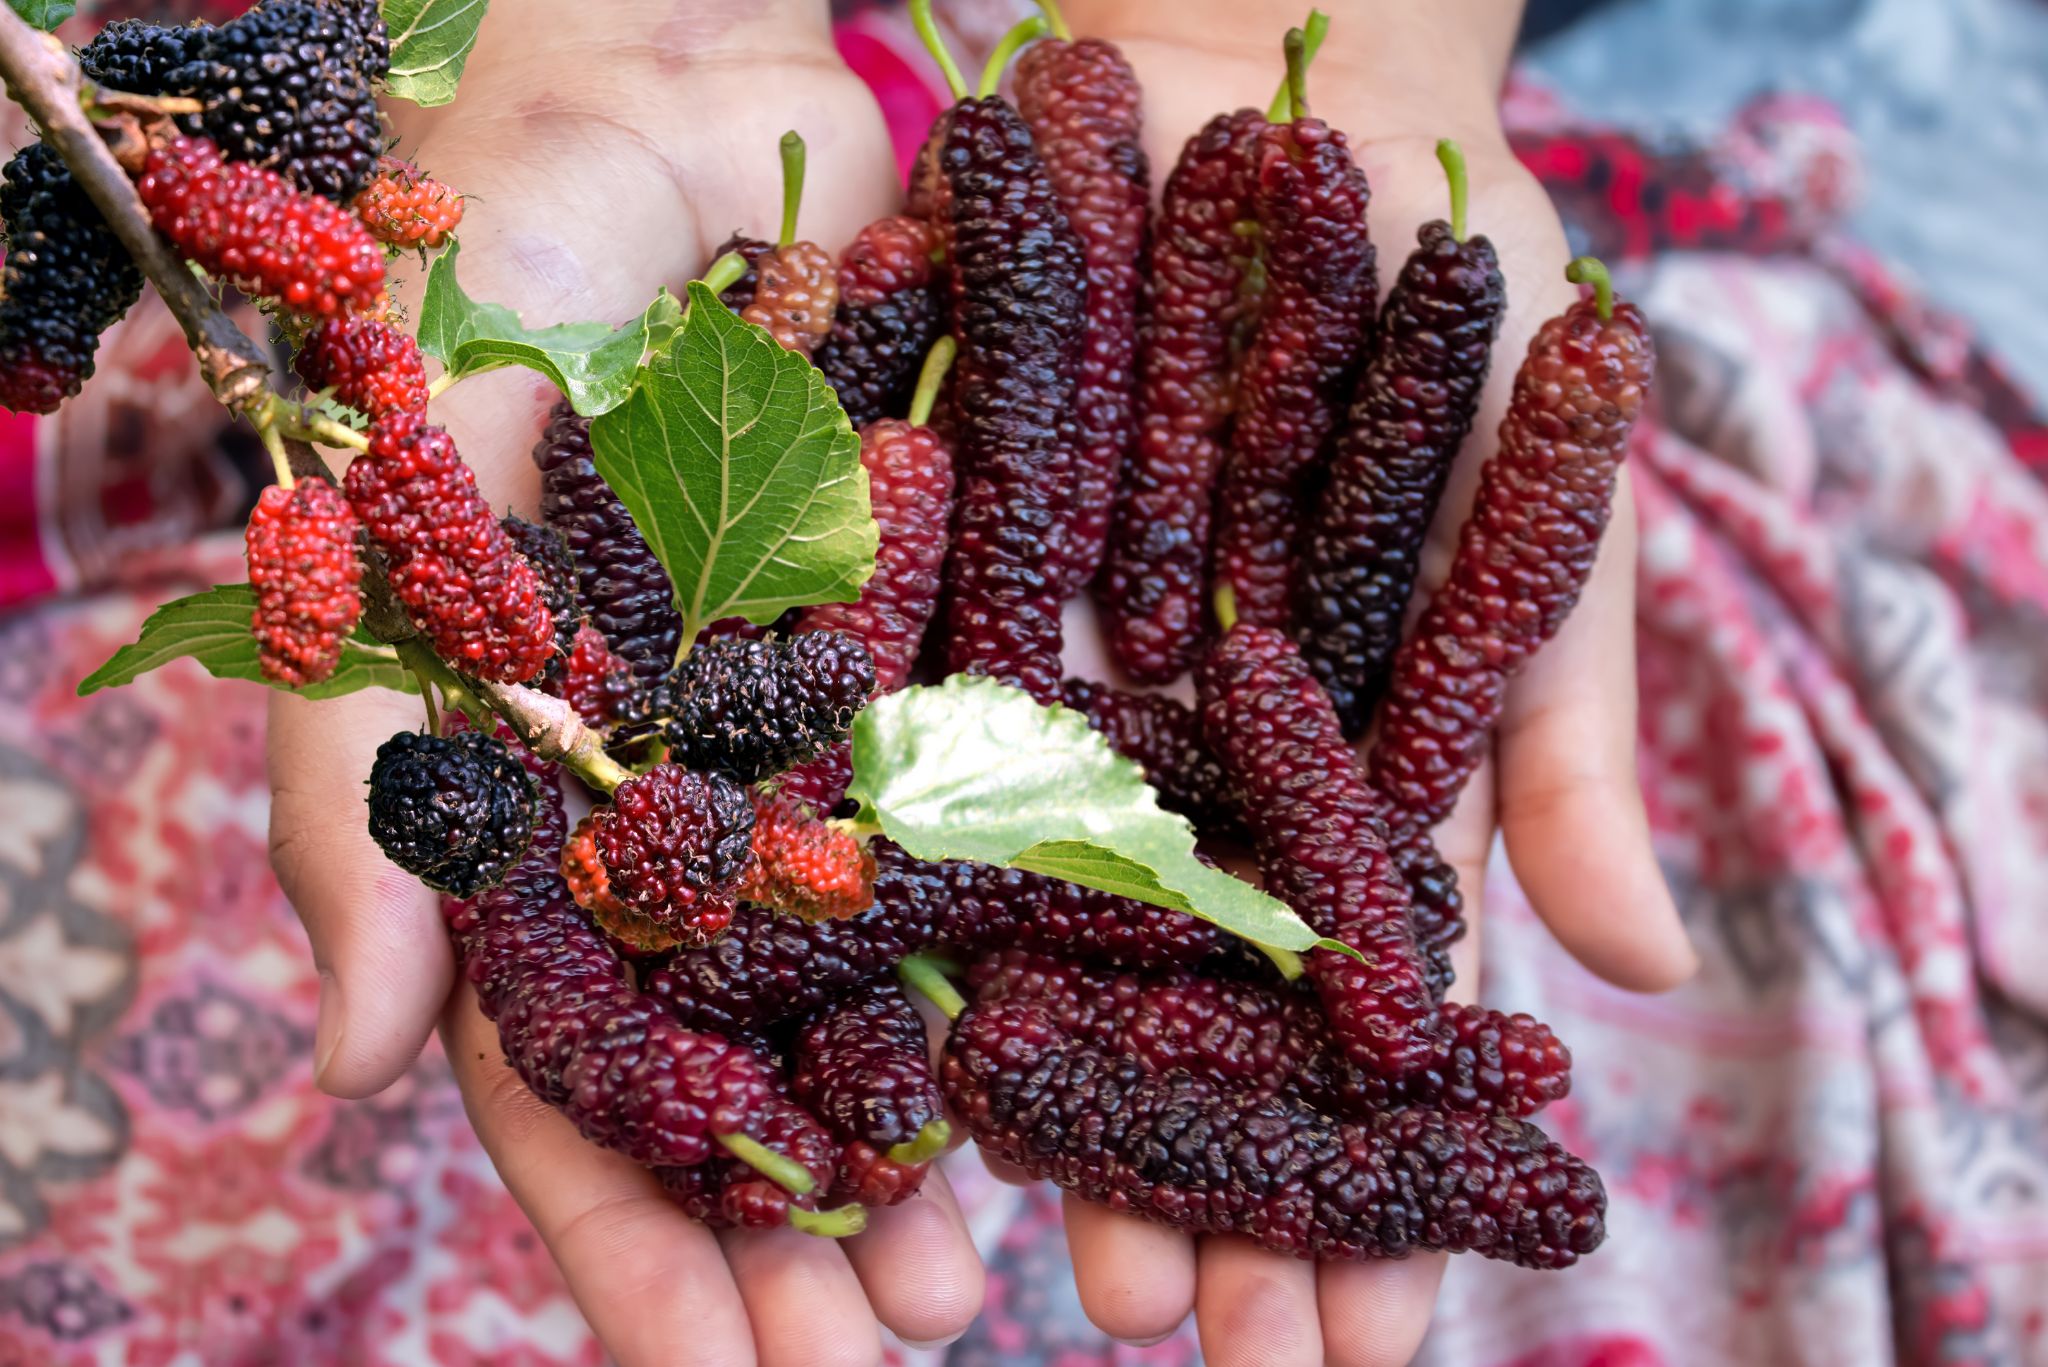 Harvested Pakistan mulberries